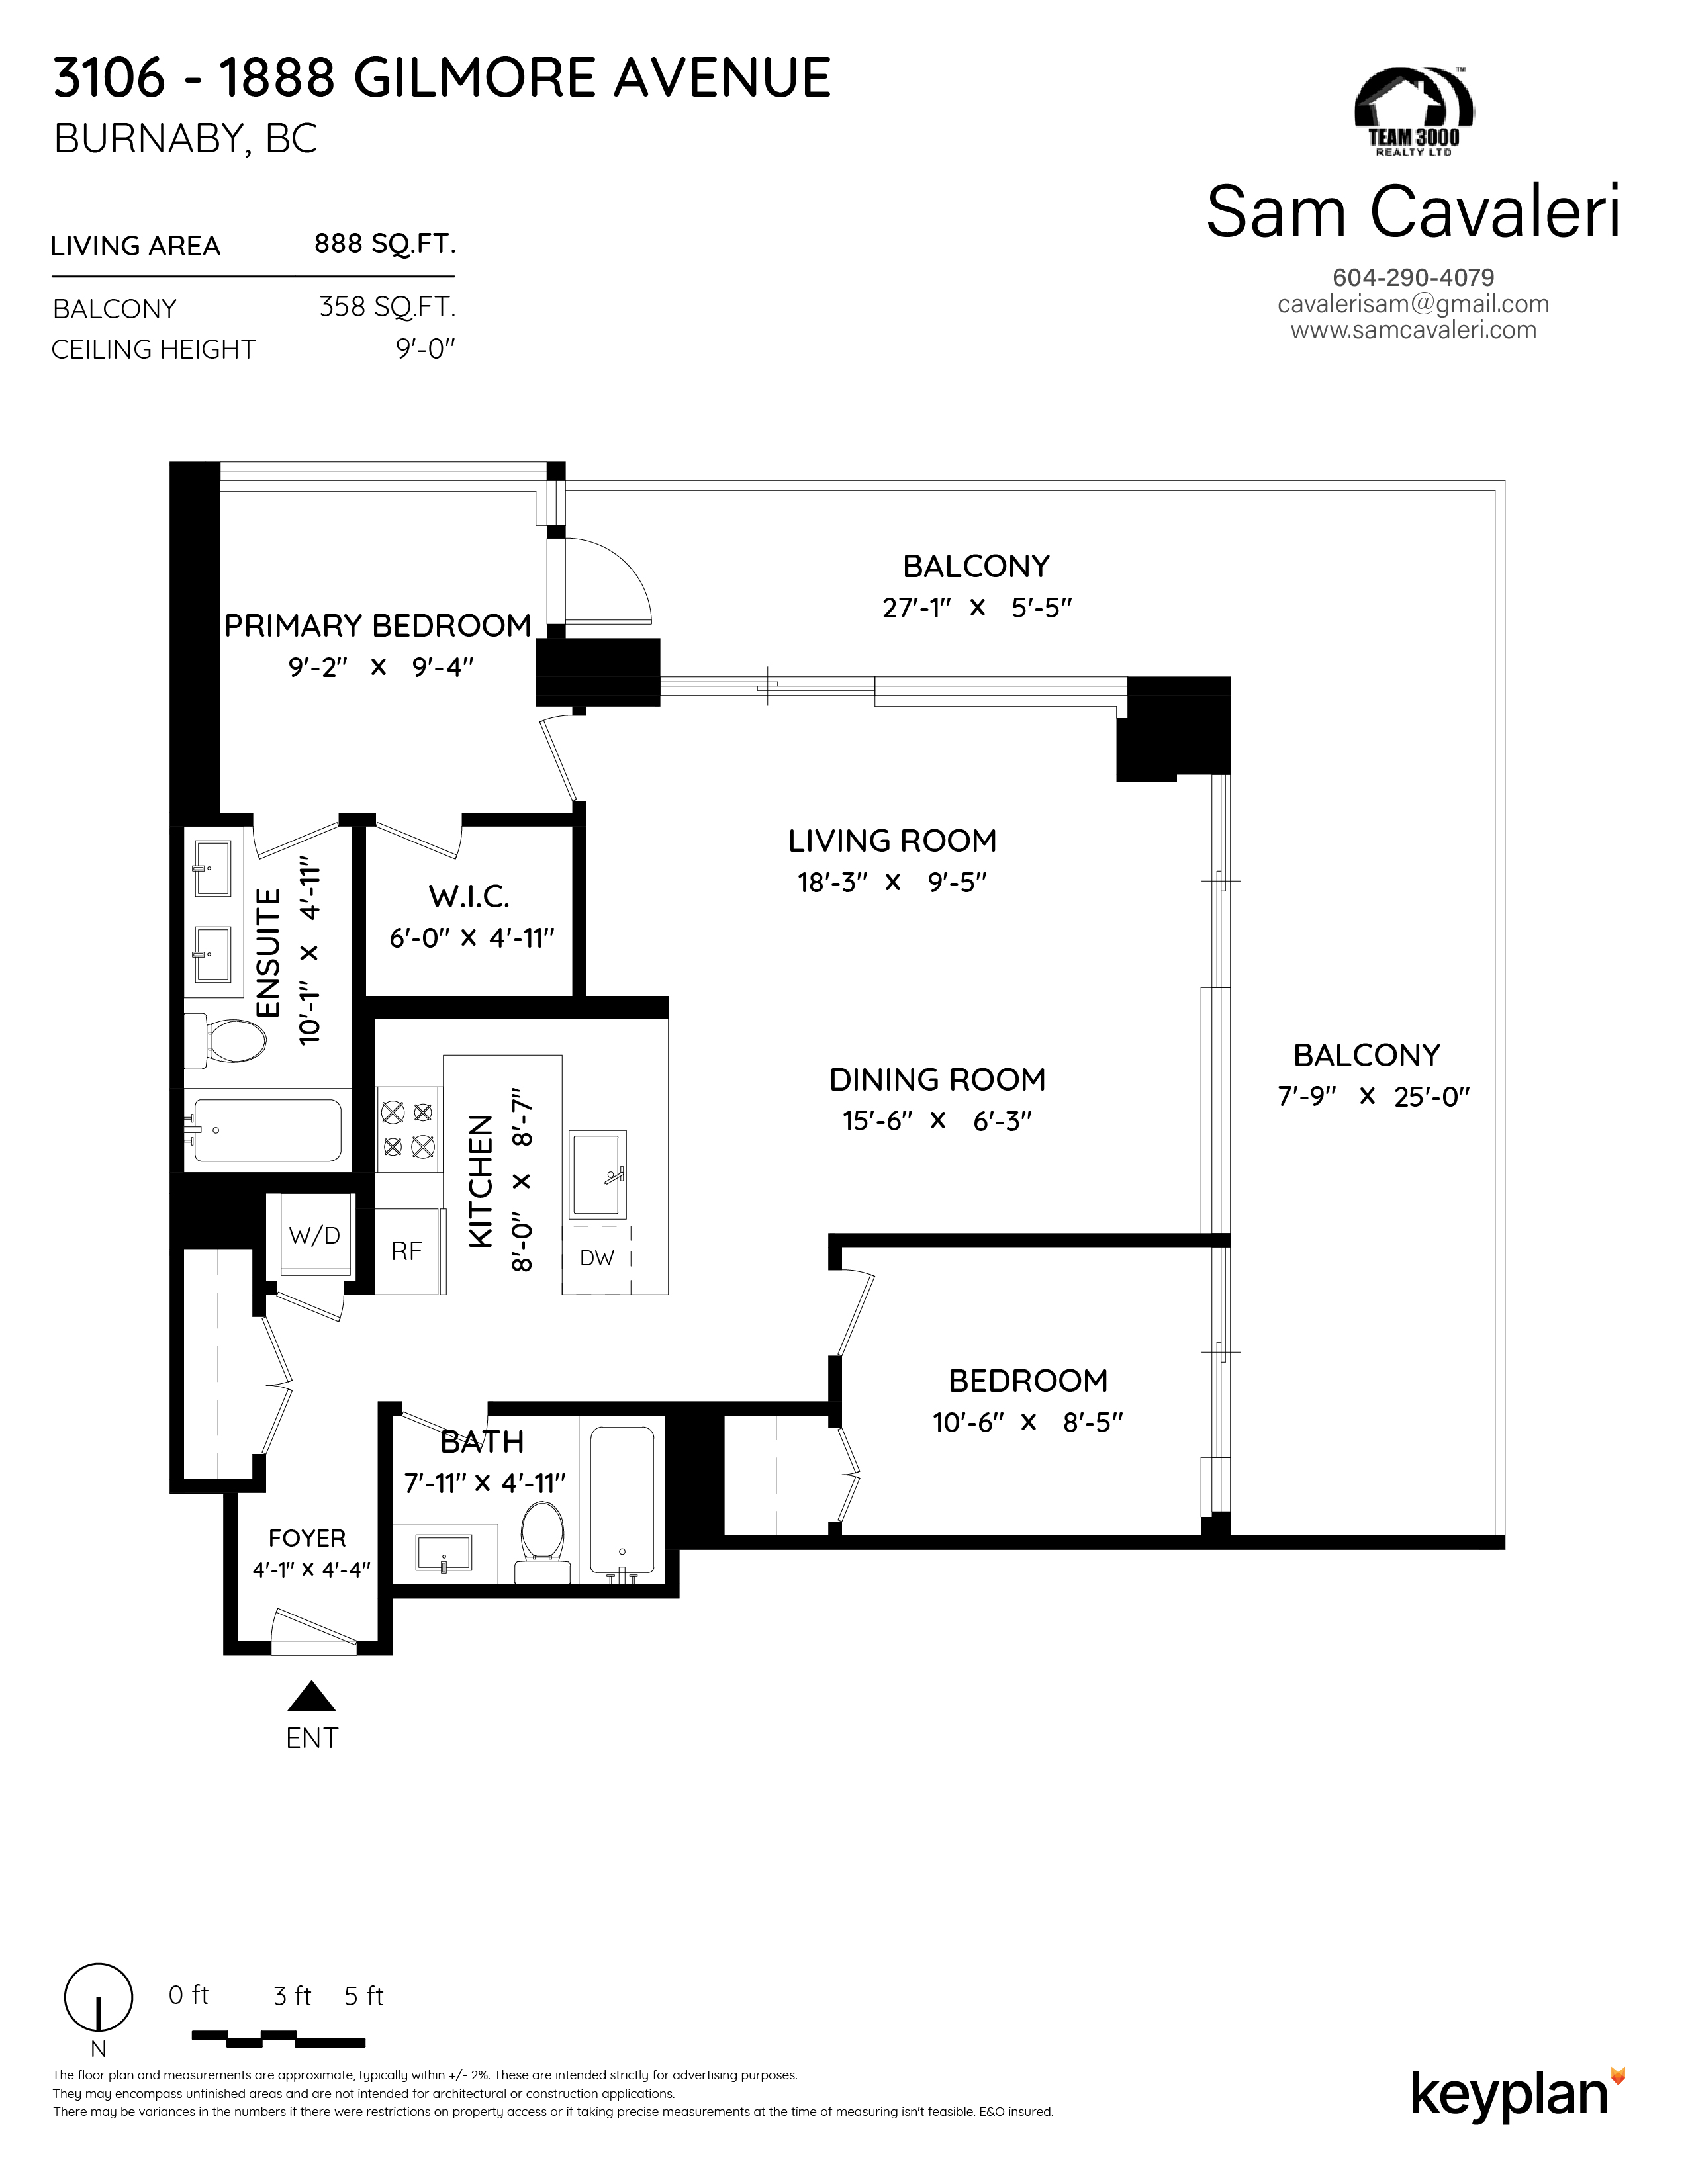 Sam Cavaleri - Unit 3106 - 1888 Gilmore Avenue, Burnaby, BC, Canada | Floor Plan 1